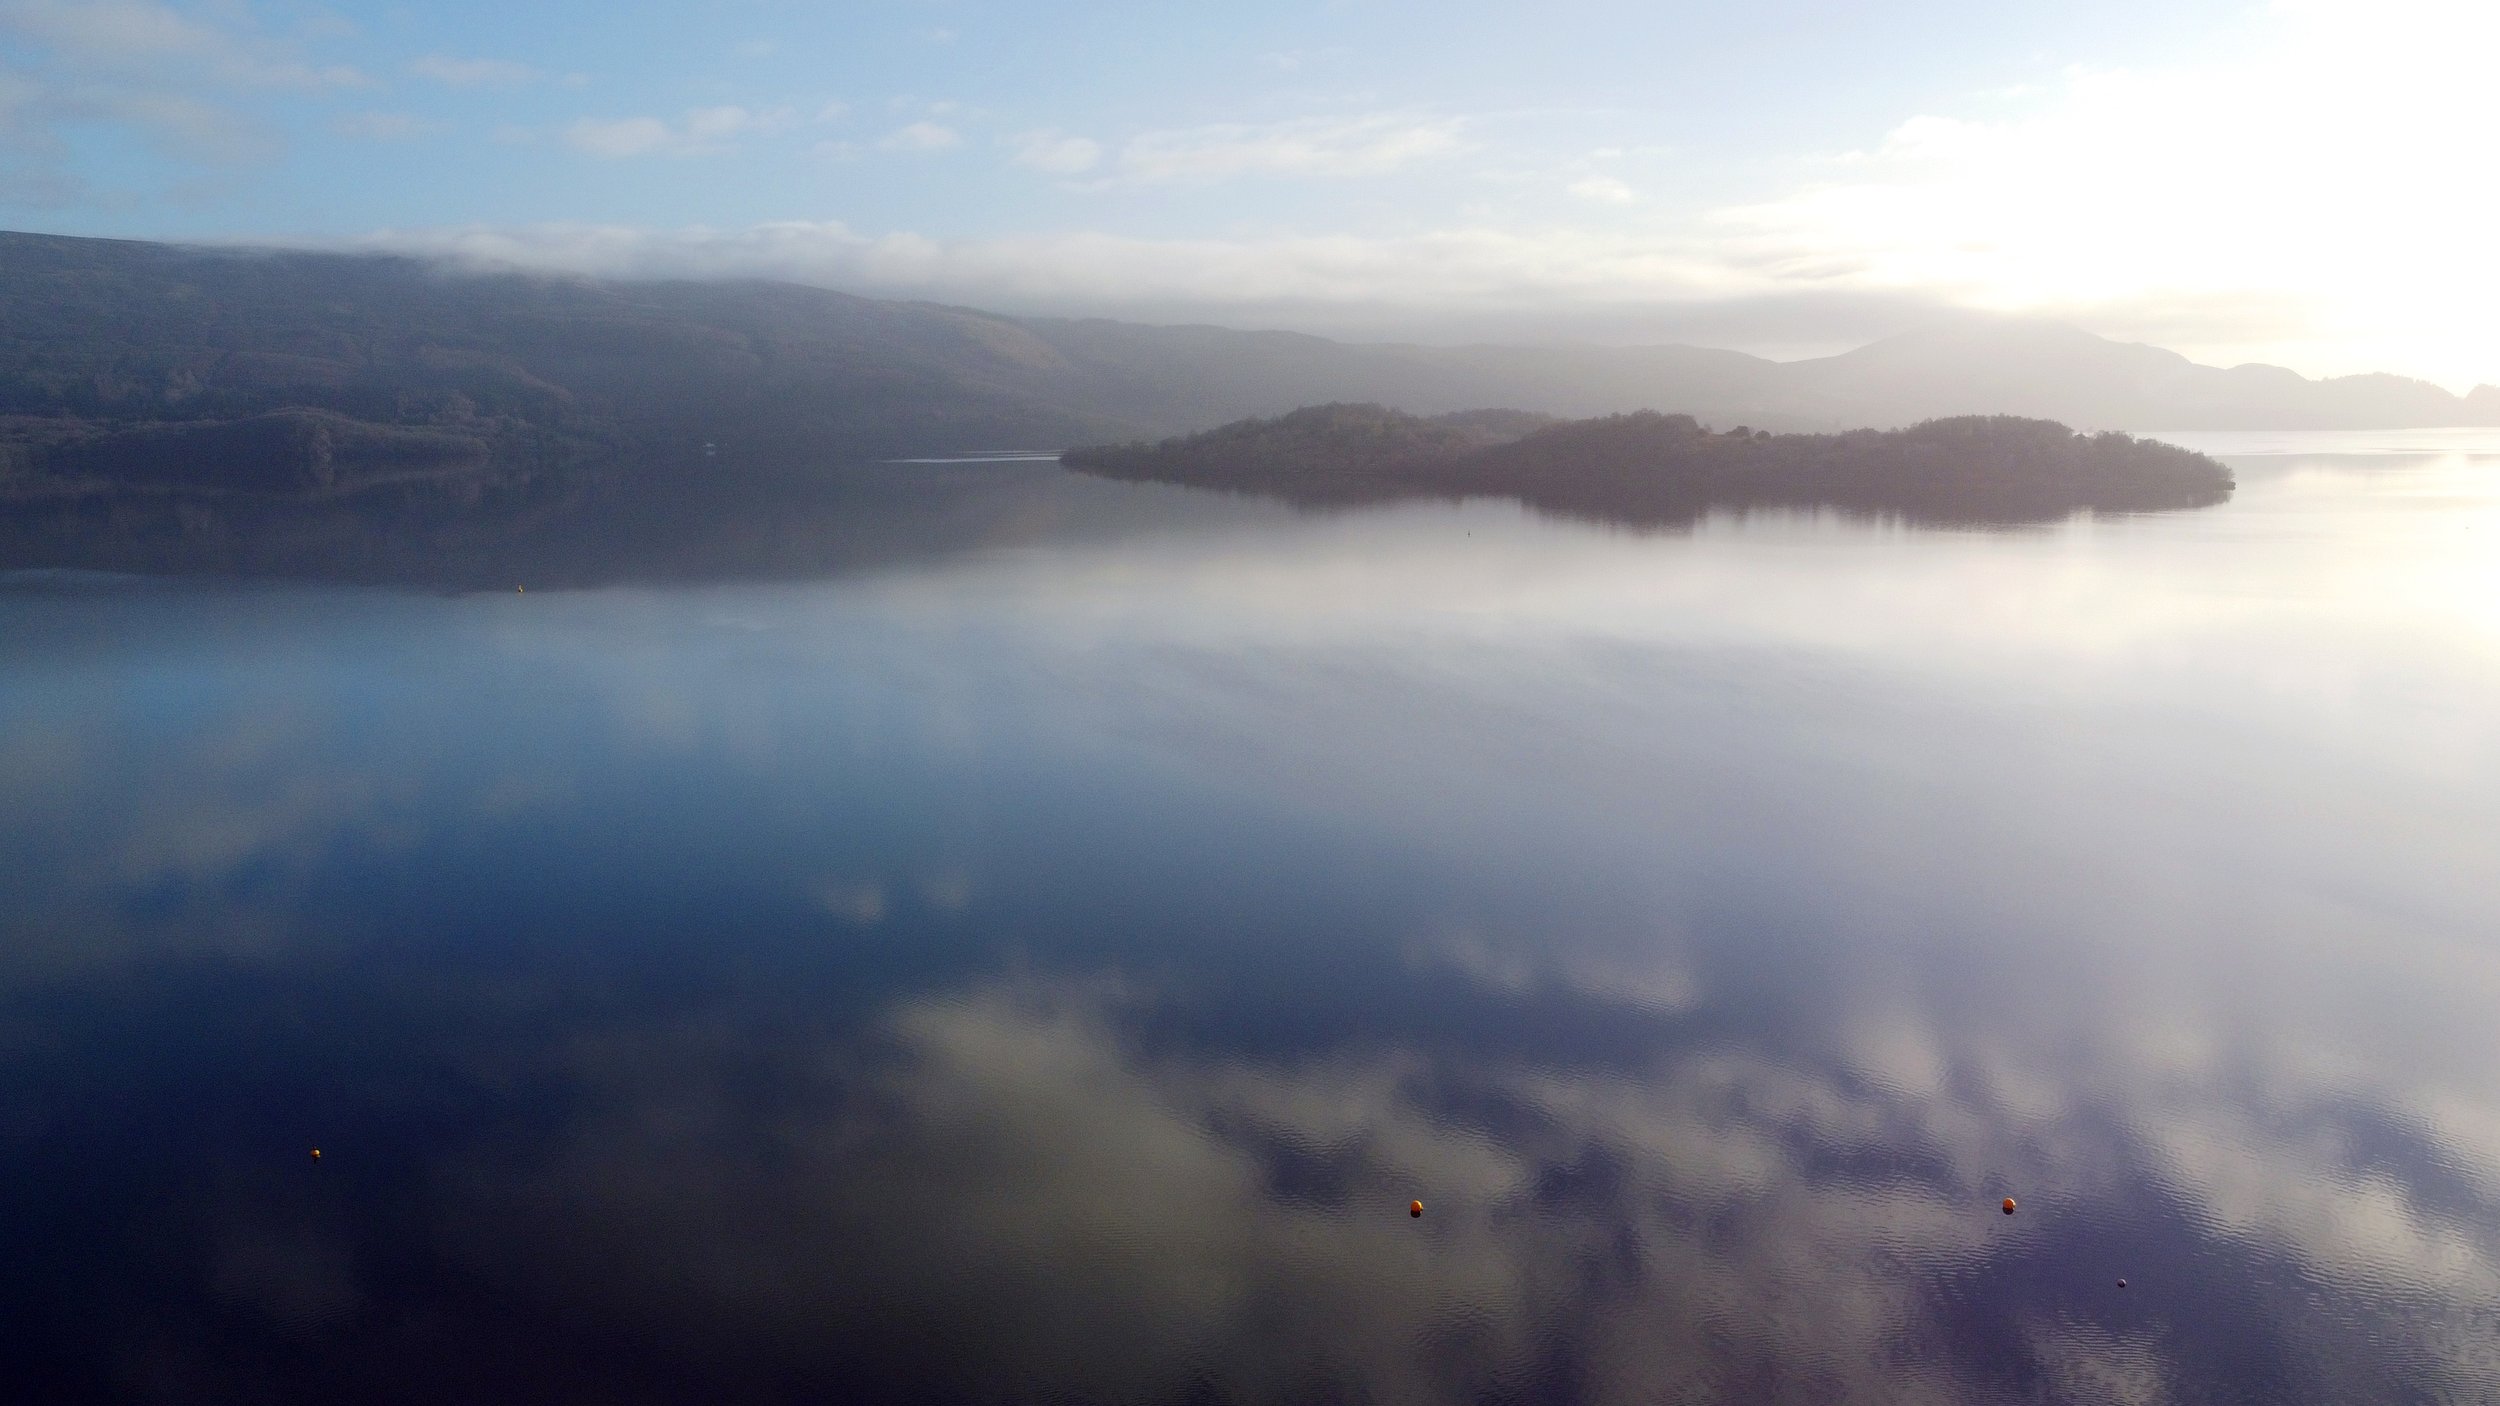  Loch Lomond in February 